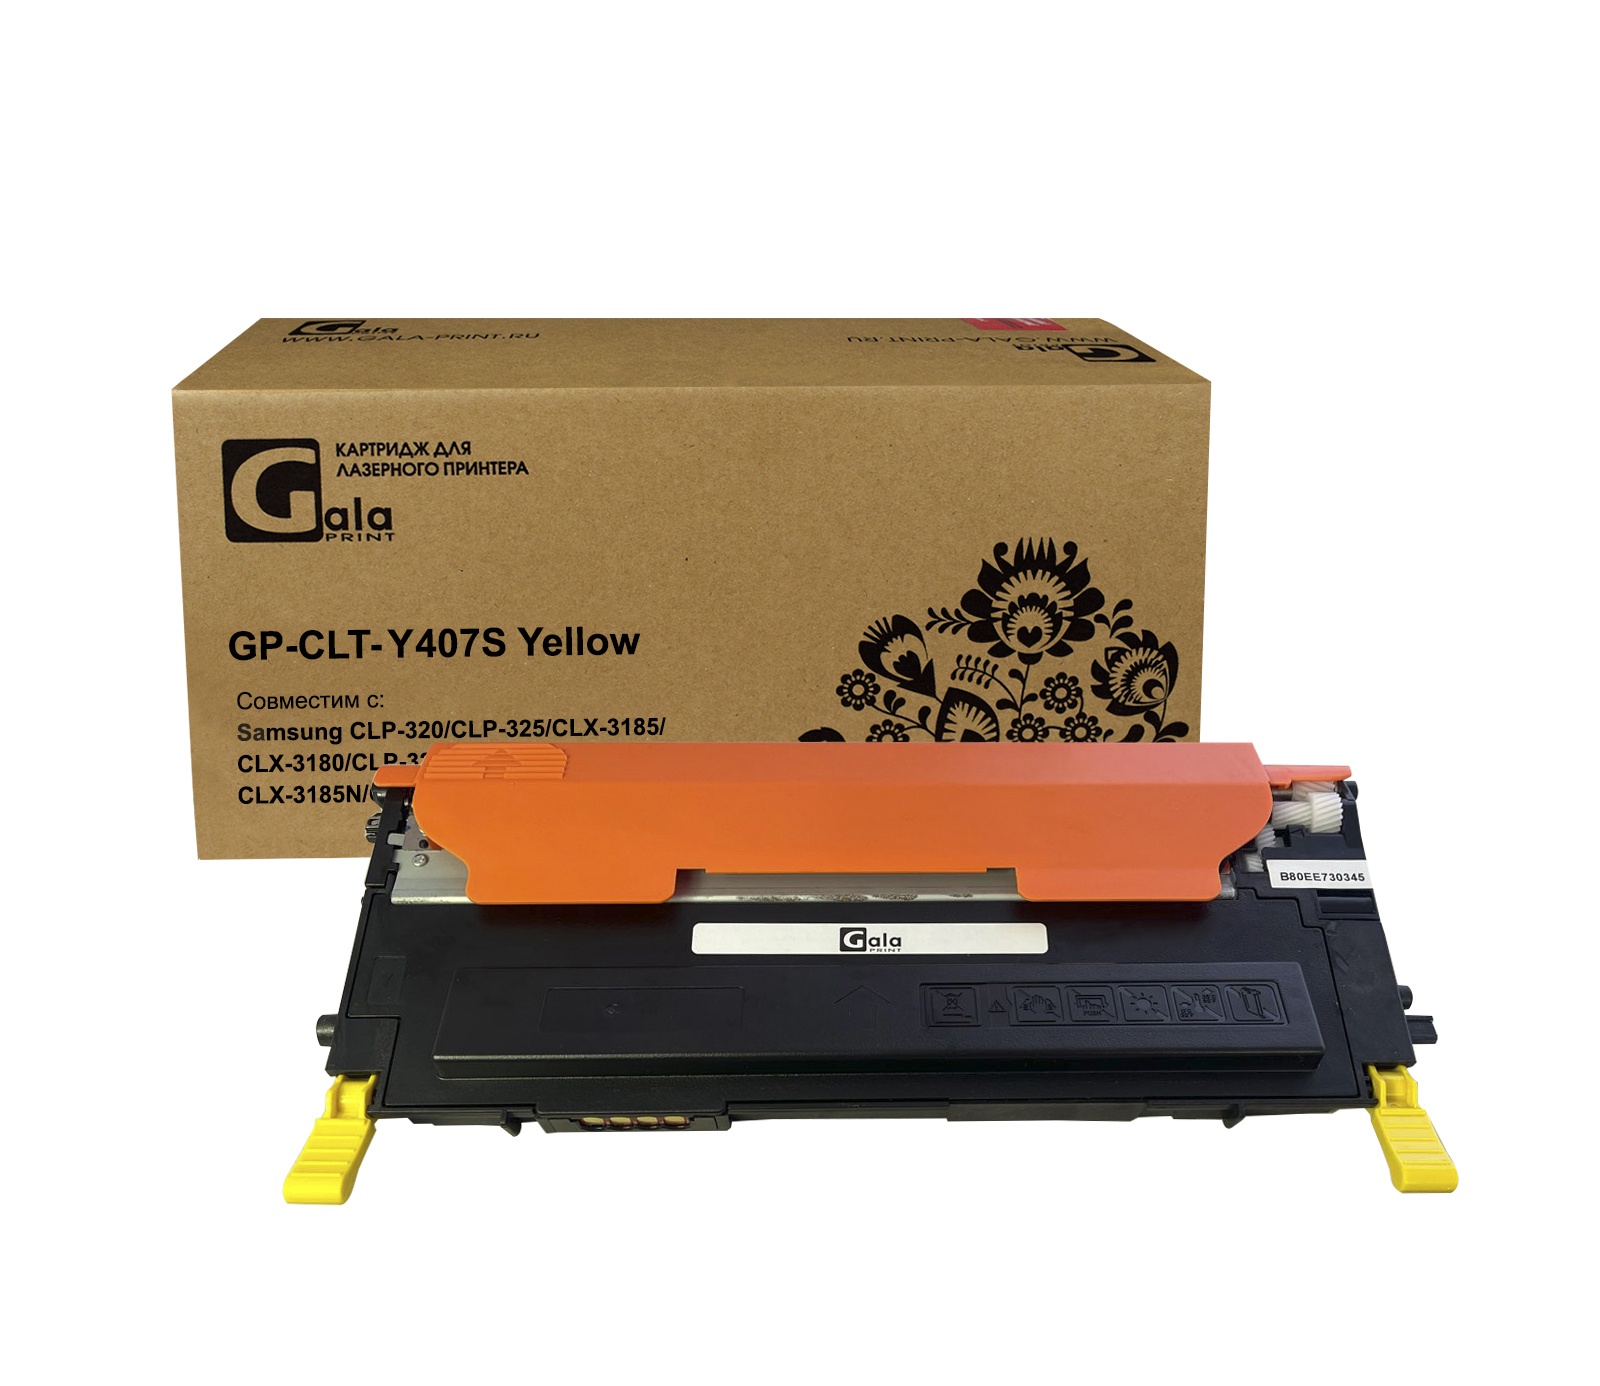 Картридж GP-CLT-Y407S для принтеров Samsung CLP-320/CLP-325/CLX-3185/CLX-3180/CLP-325W/CLP-320N/CLX-3185N/CLX-3185FN/CLX-3185W Yellow 1000 копий GalaPrint